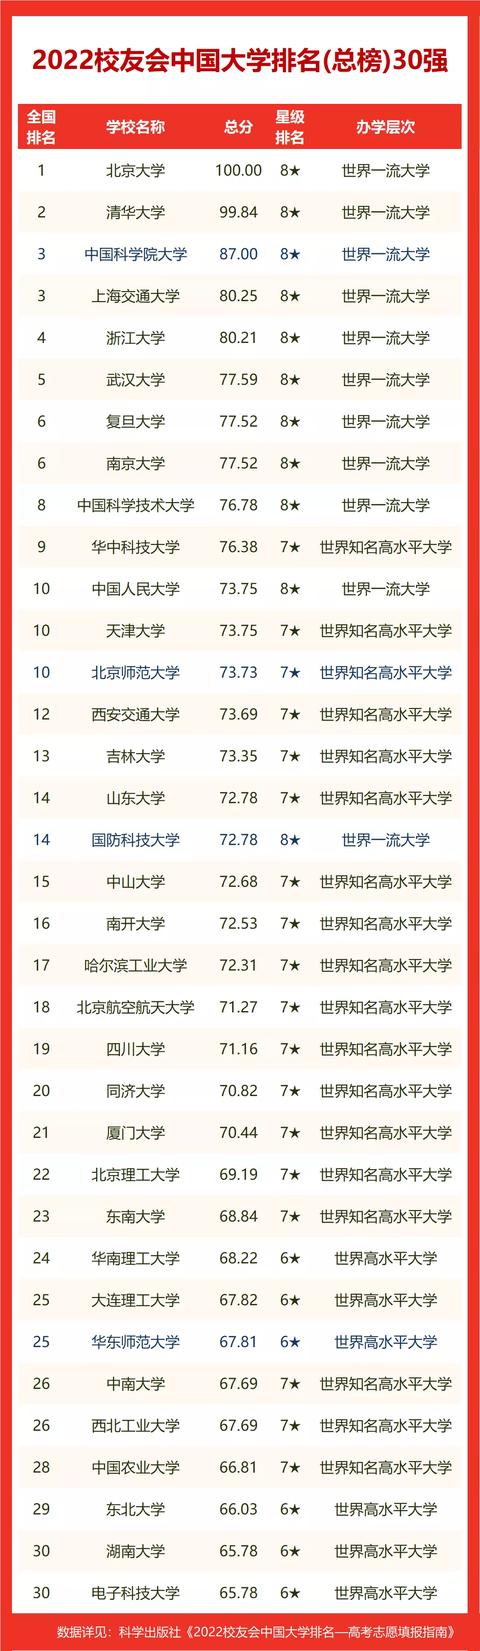 山东省高校排名2022最新排名榜(山东高校全国排名表)